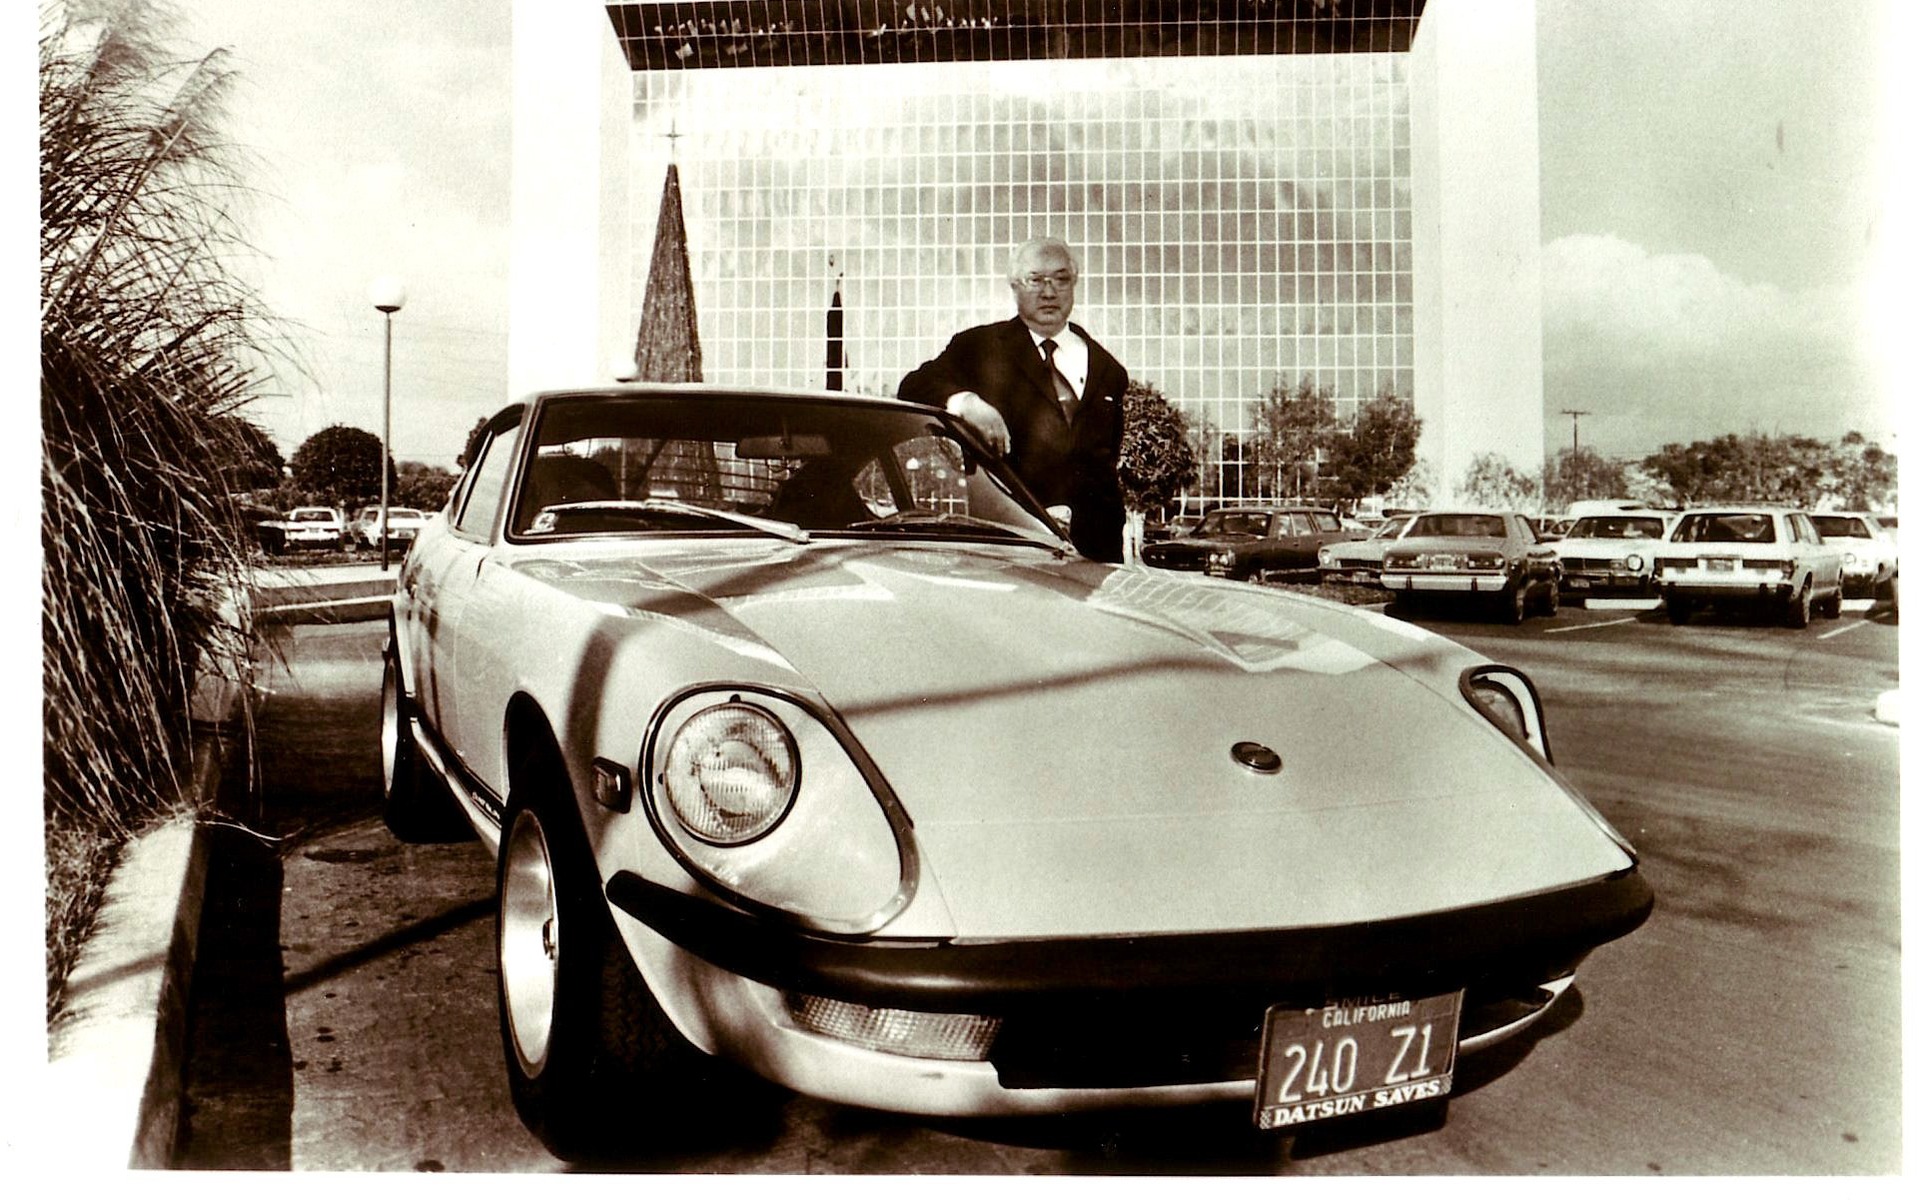 Mr. K, with a Datsun 240Z